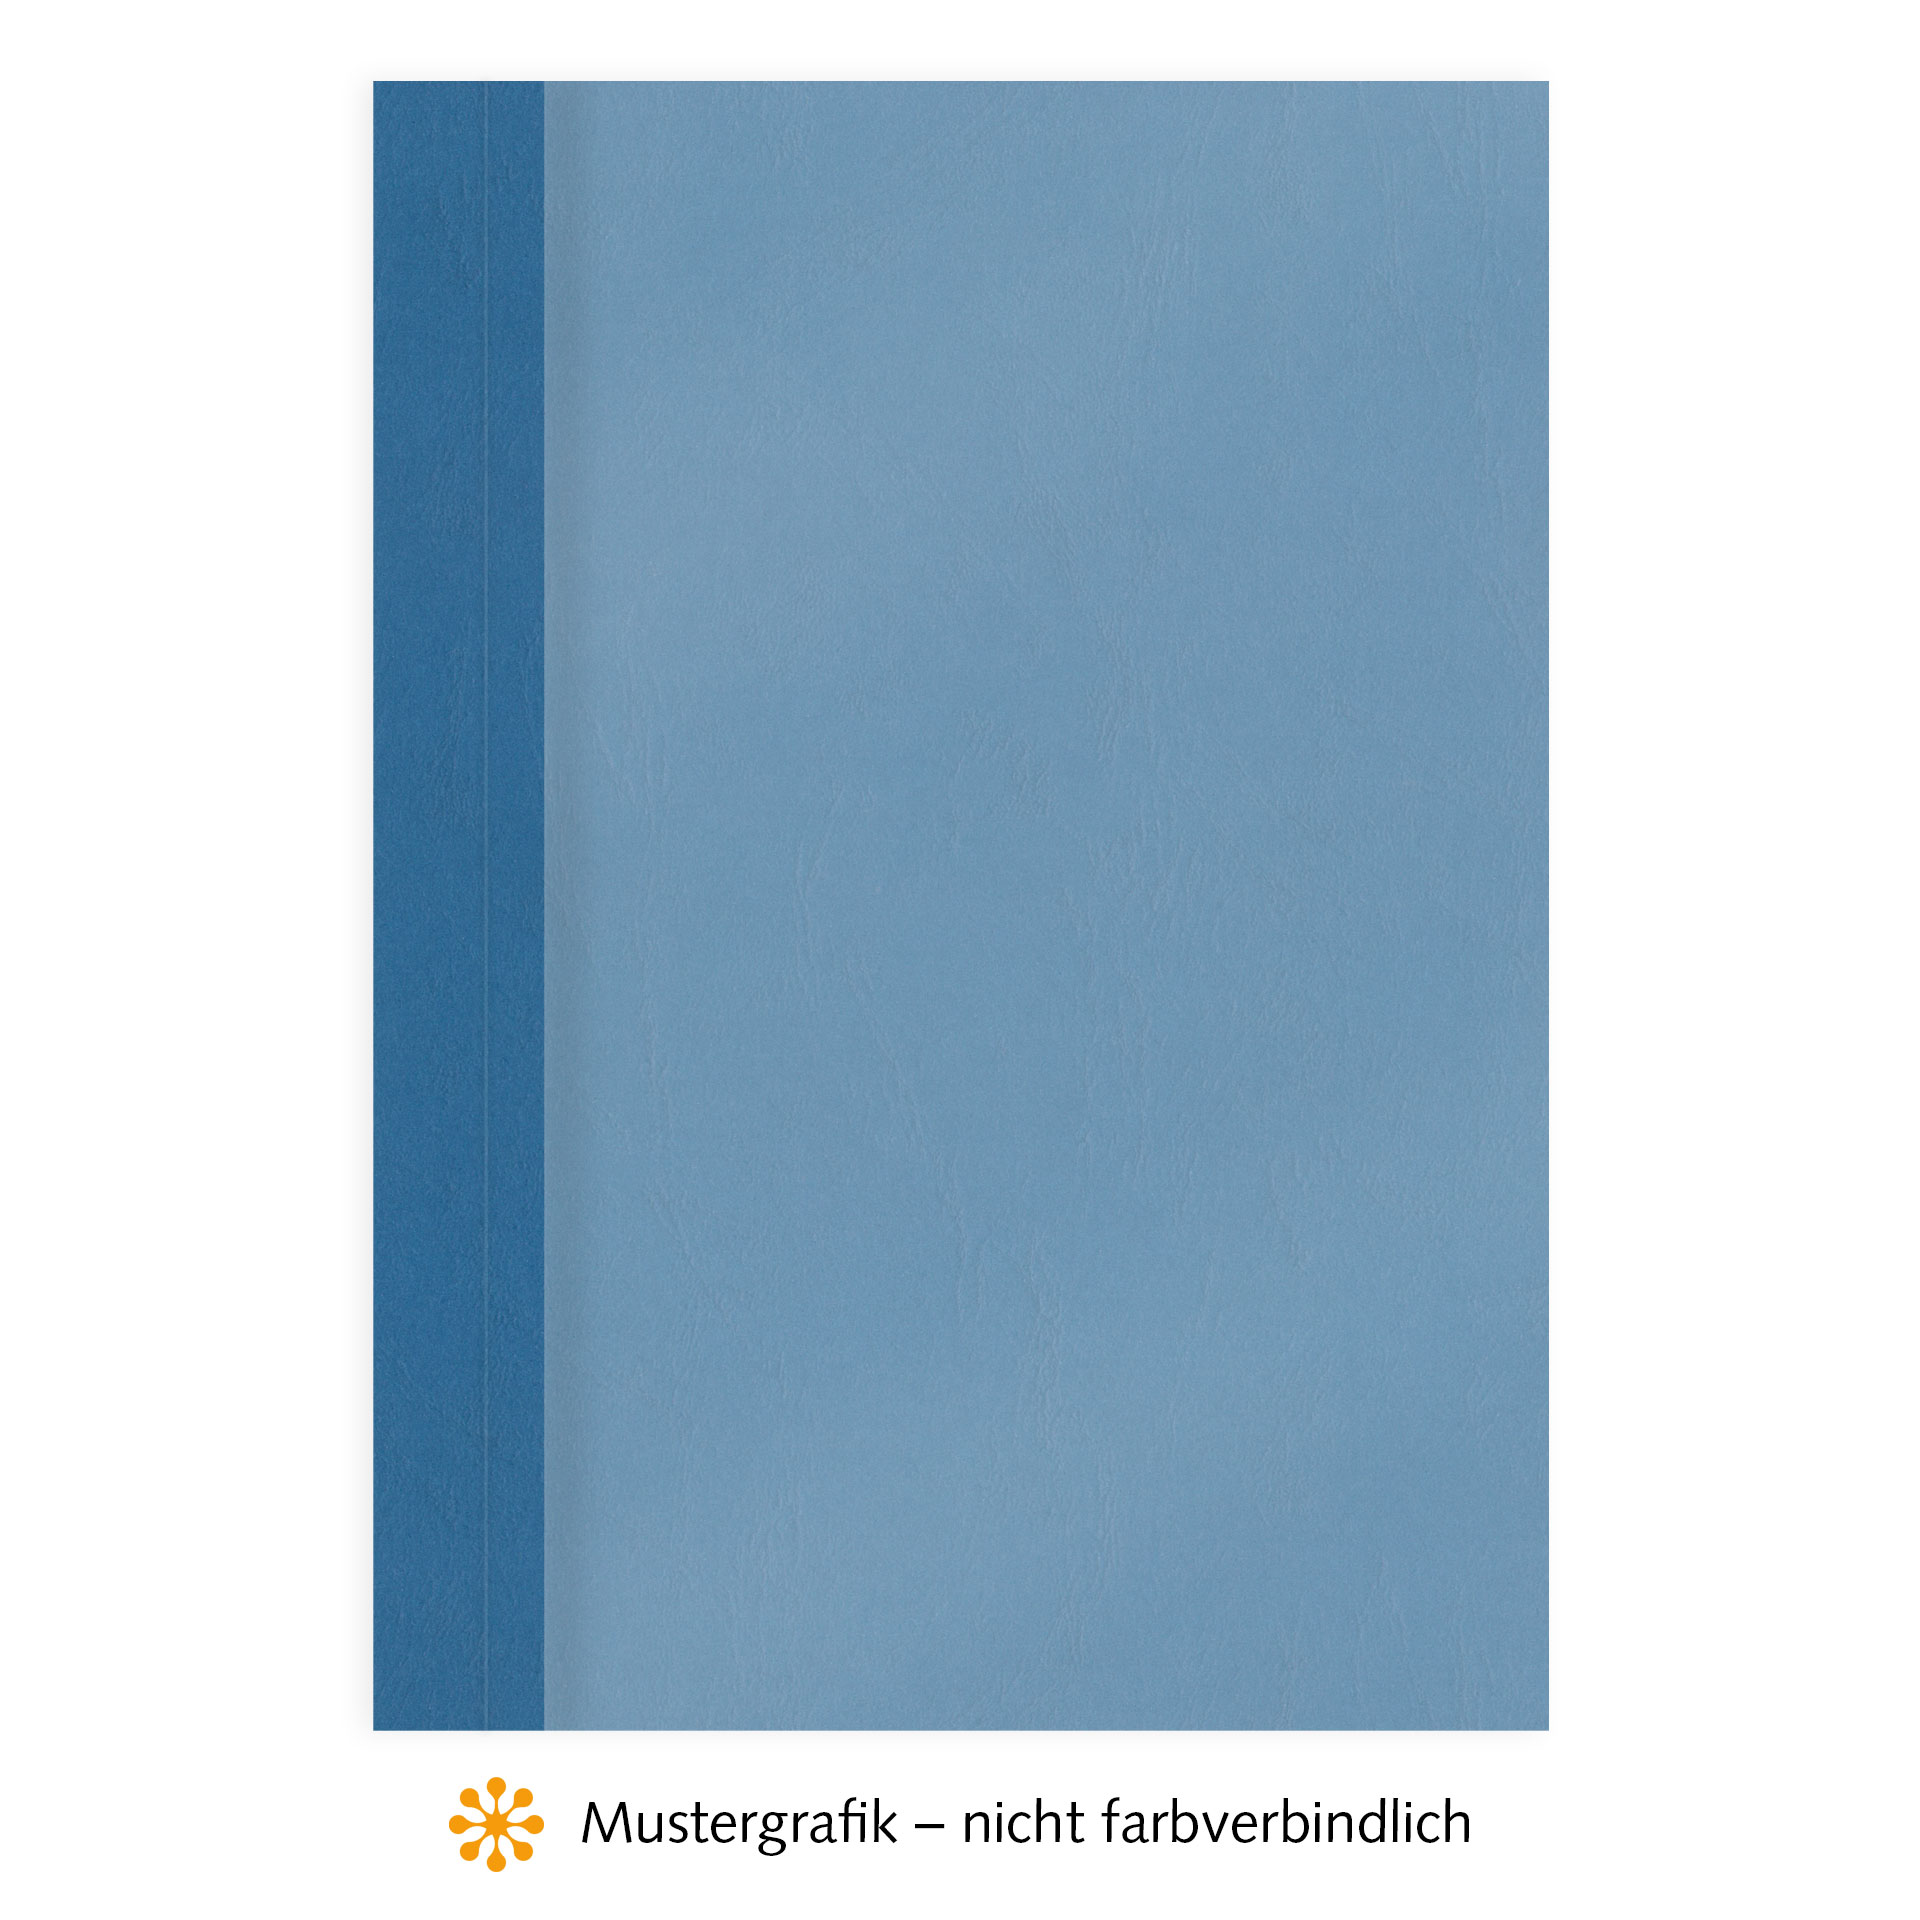 Ösenmappen DUO Cover, Vorderseite Folie MATT transparent, Rückseite Karton Leder, Enzianblau / Kobaltblau, 5 mm, 41 bis 50 Blatt